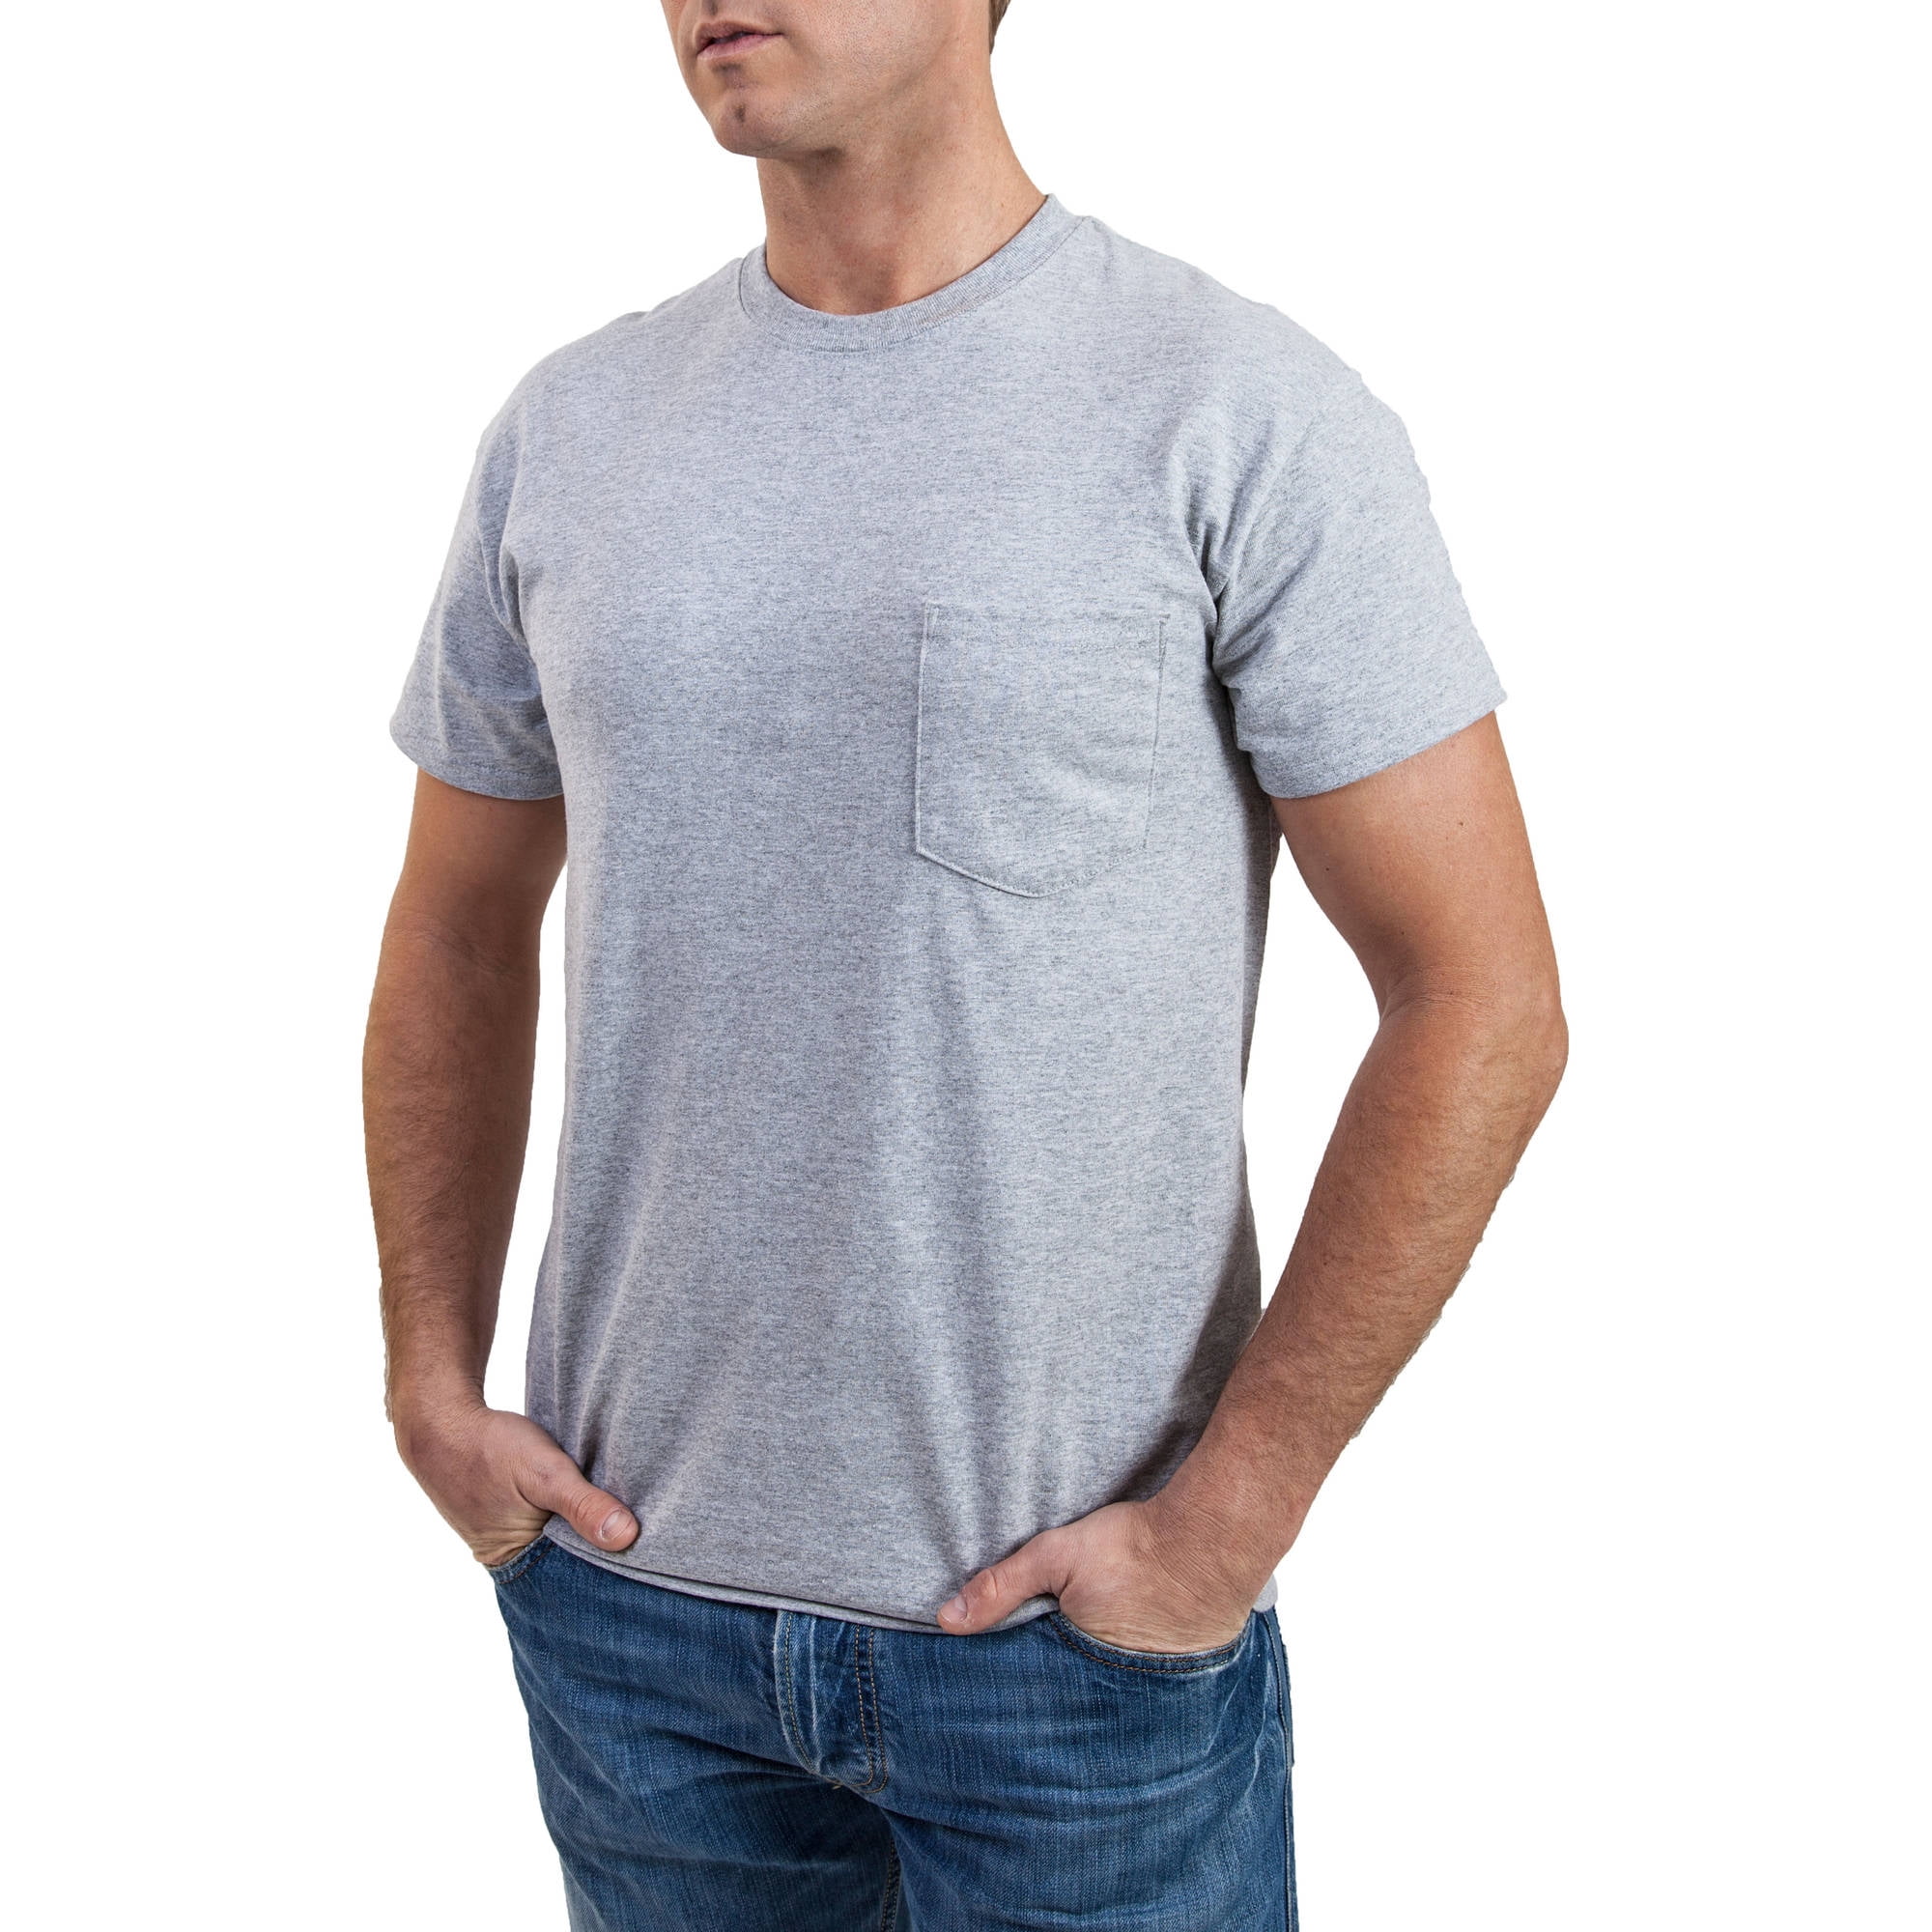 Gildan Men's Black and Grey Pocket Crew T-Shirt, 2-Pack - Walmart.com